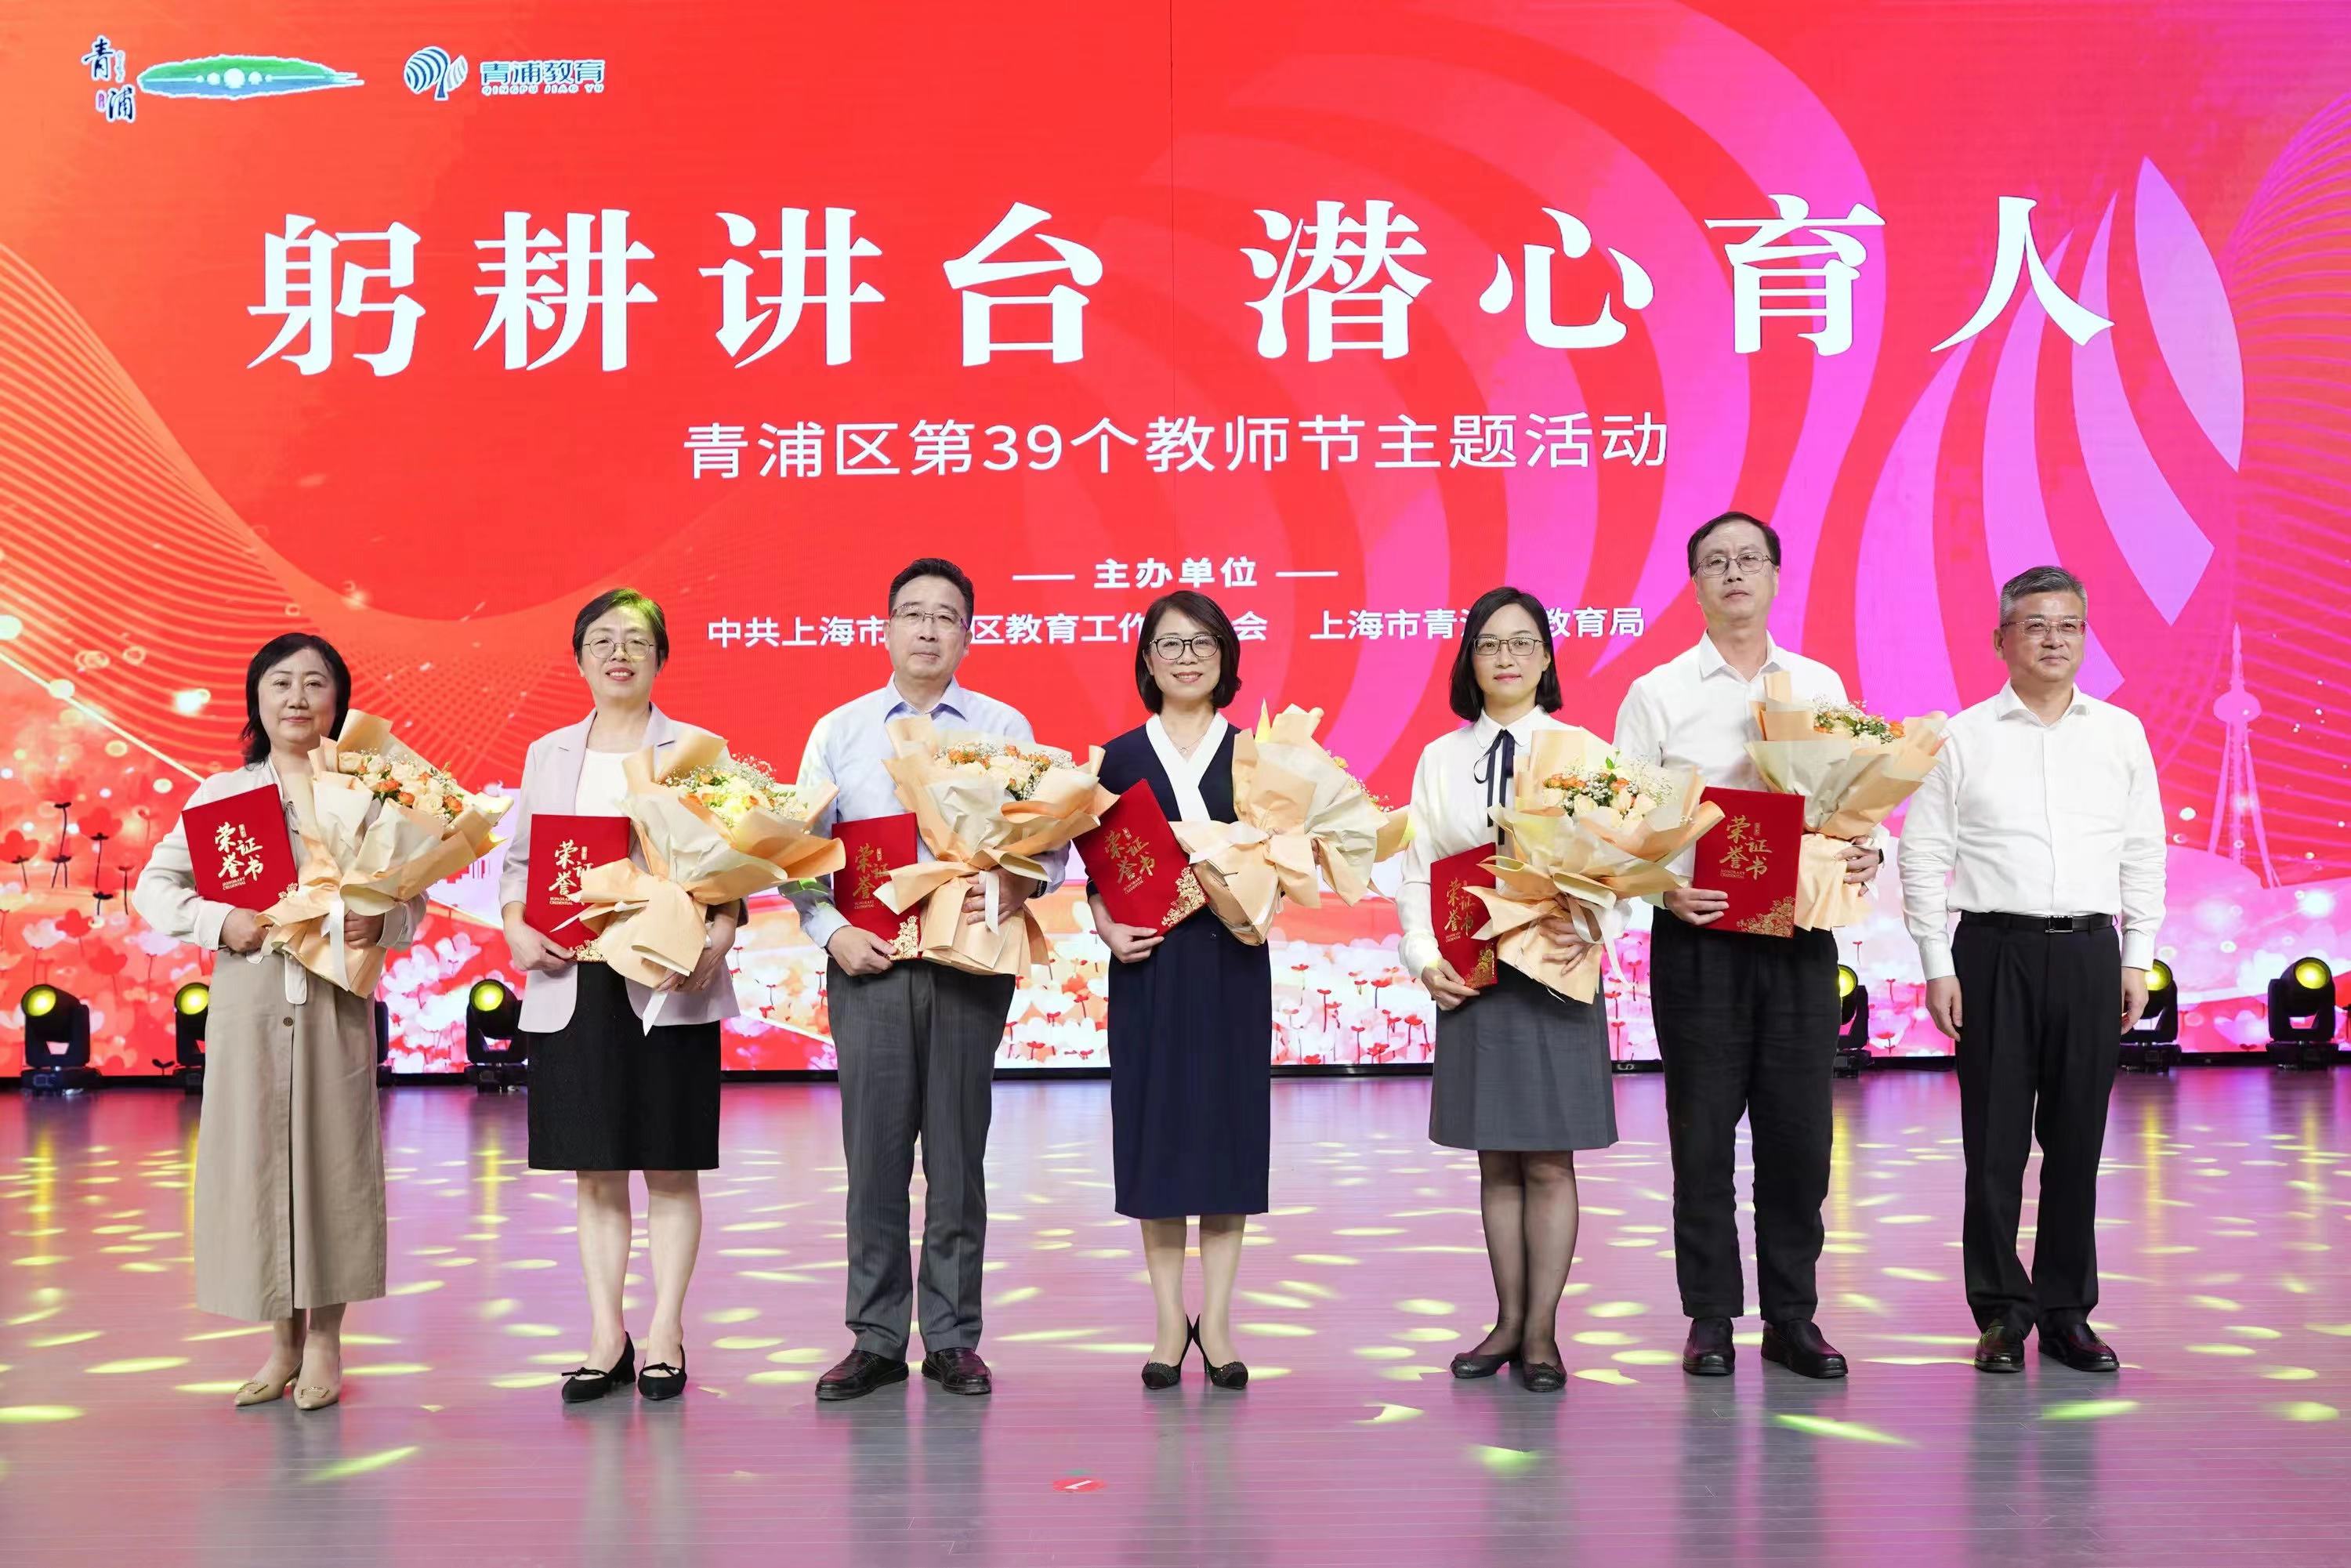 参加青浦区庆祝第39个教师节主题活动.jpg